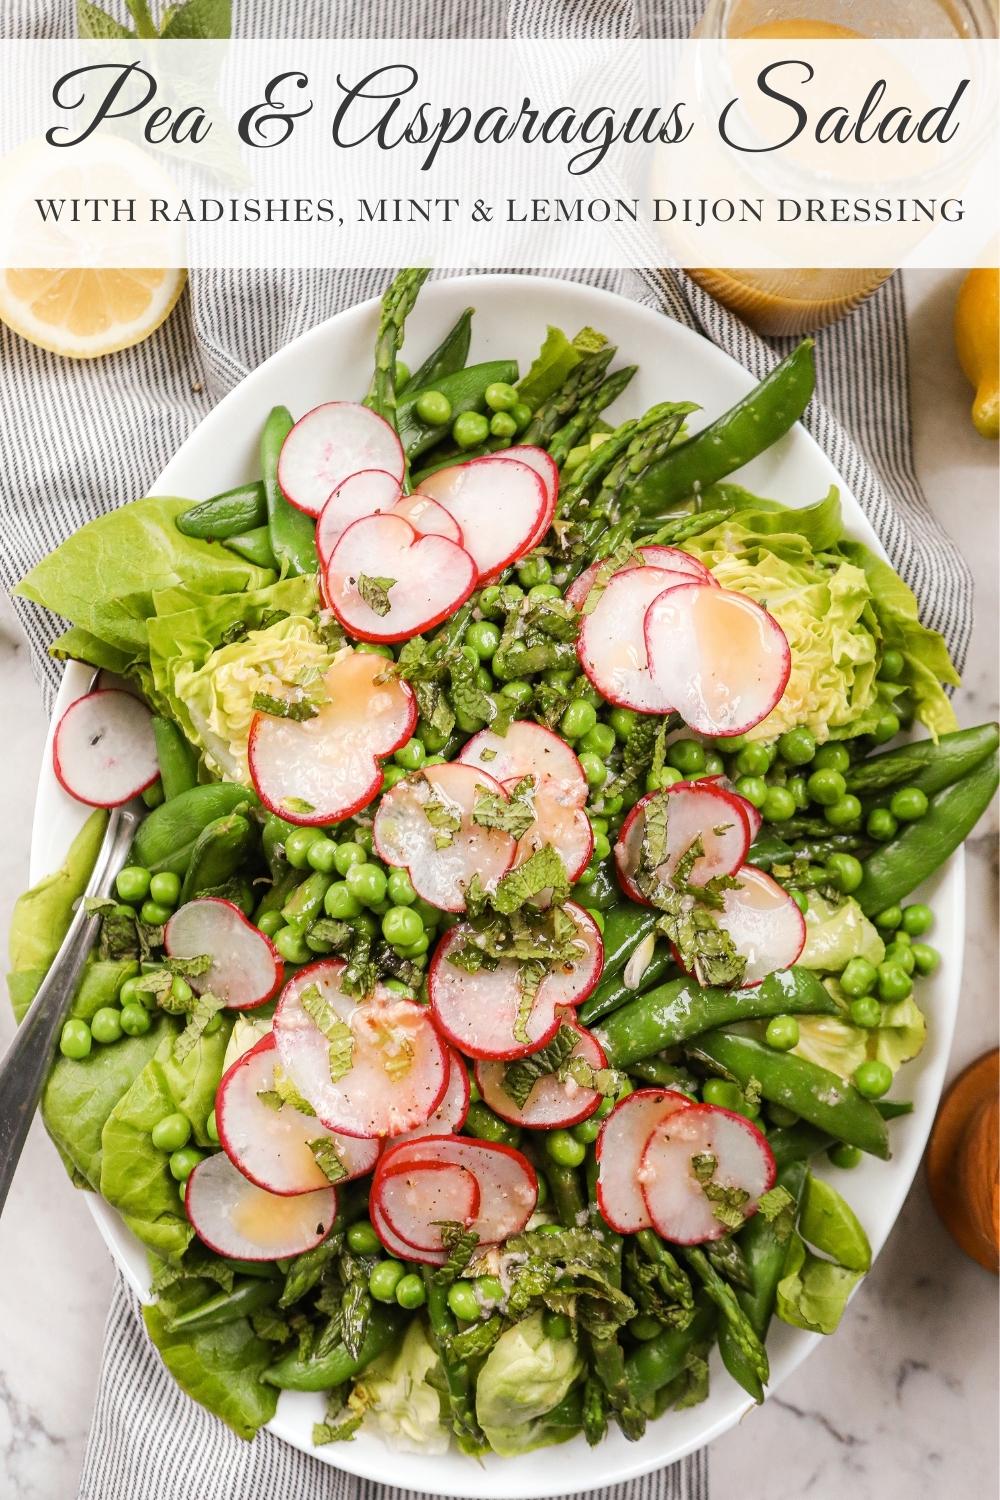 Asparagus and Pea Salad recipe